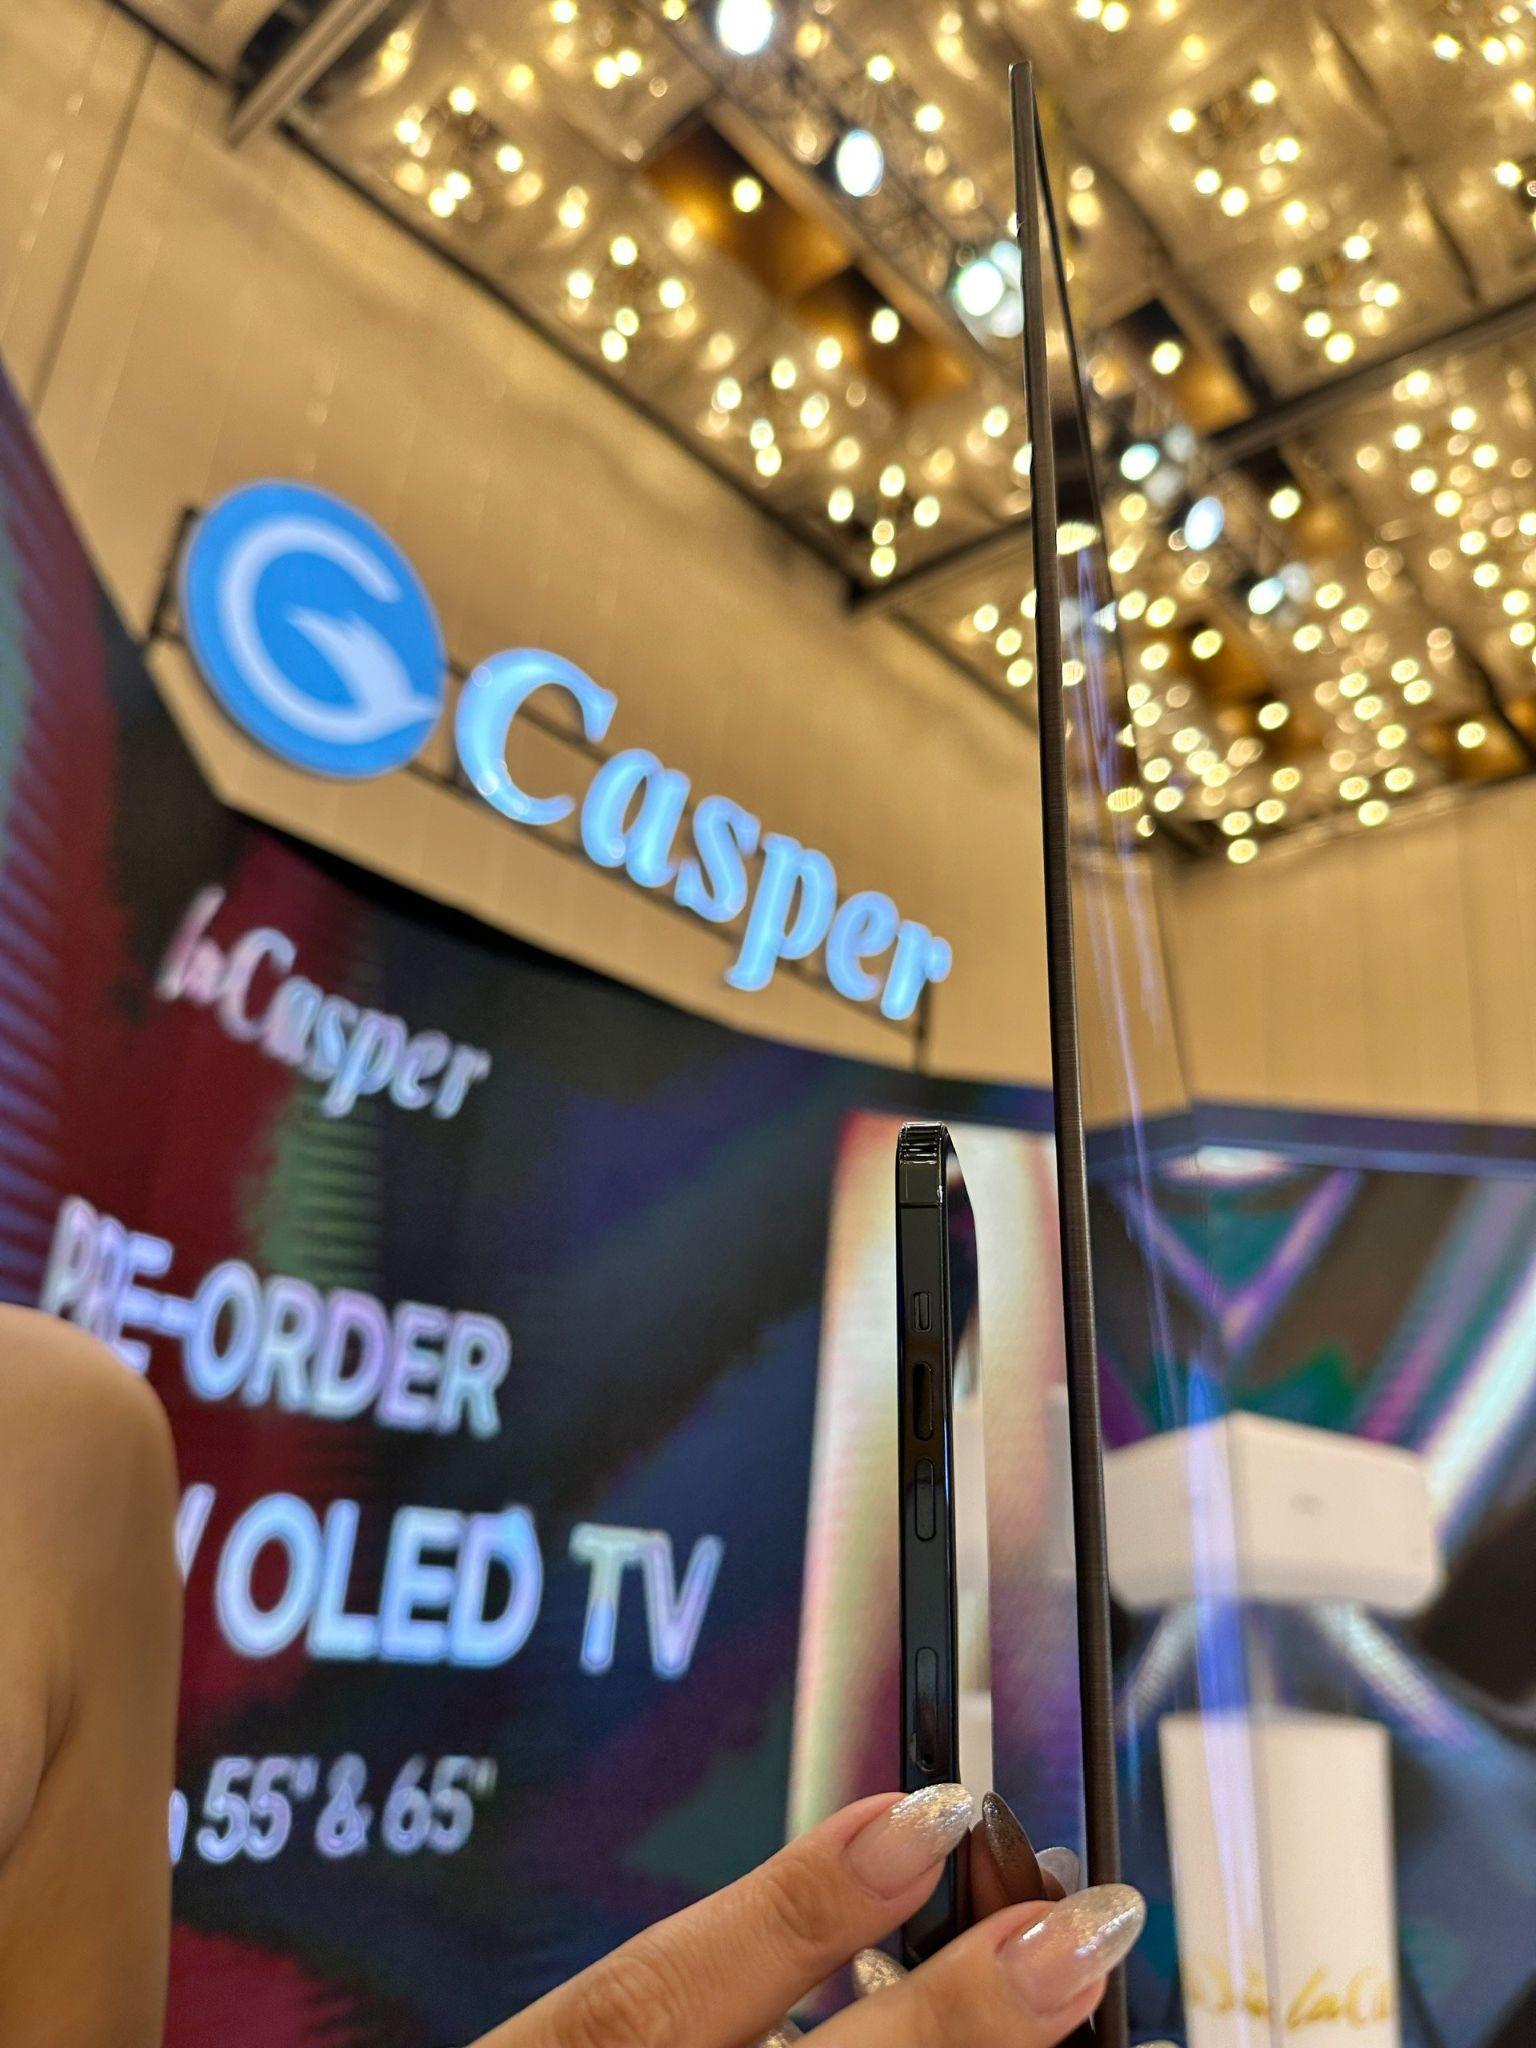 3 lý do khiến “tân binh” LaCasper OLED TV này xứng danh tâm điểm phòng khách sang trọng ngày Tết - Ảnh 2.